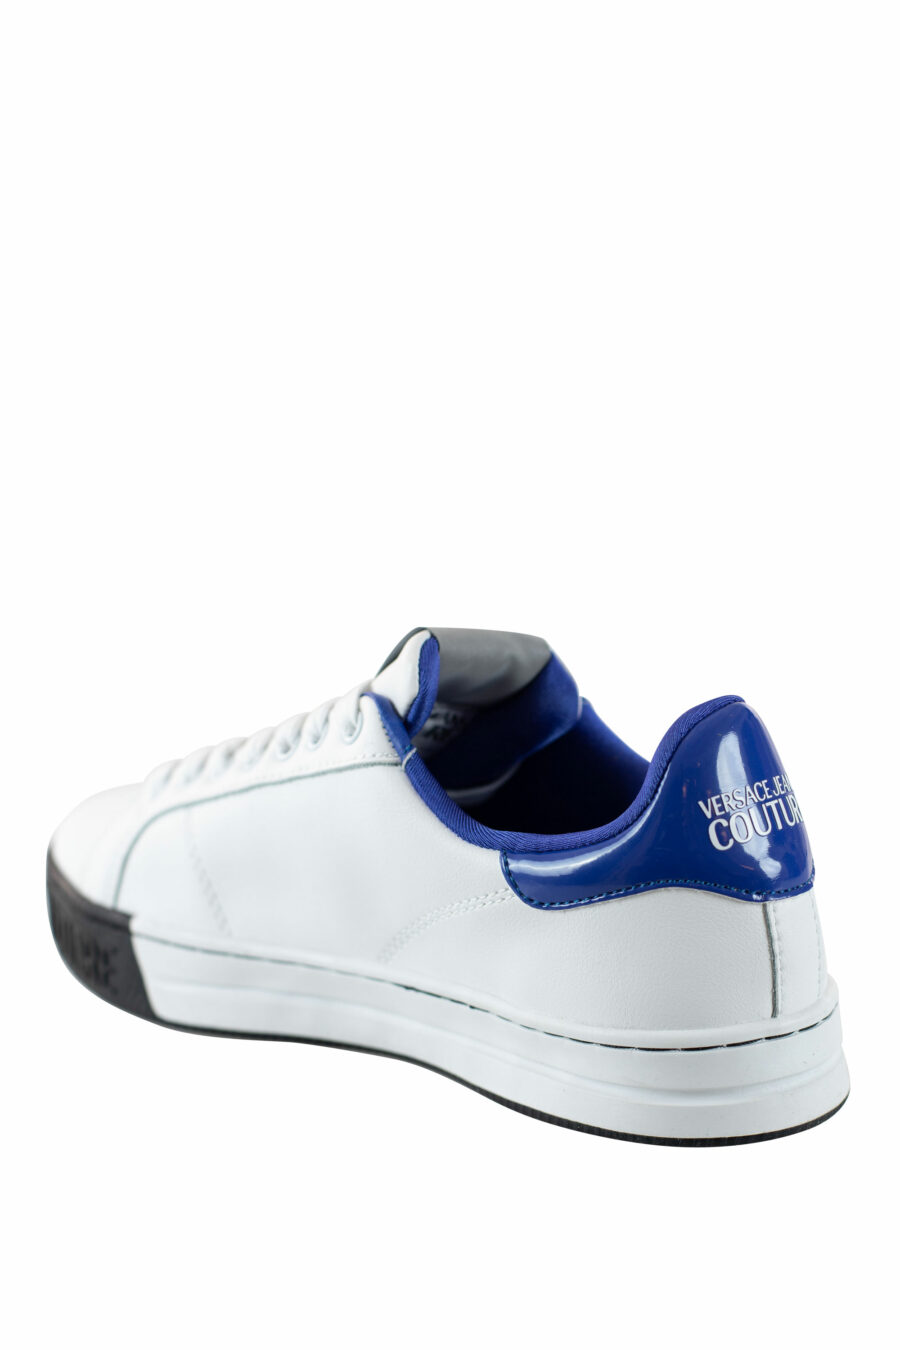 Zapatillas blancas con azul y logo circular - IMG 4506